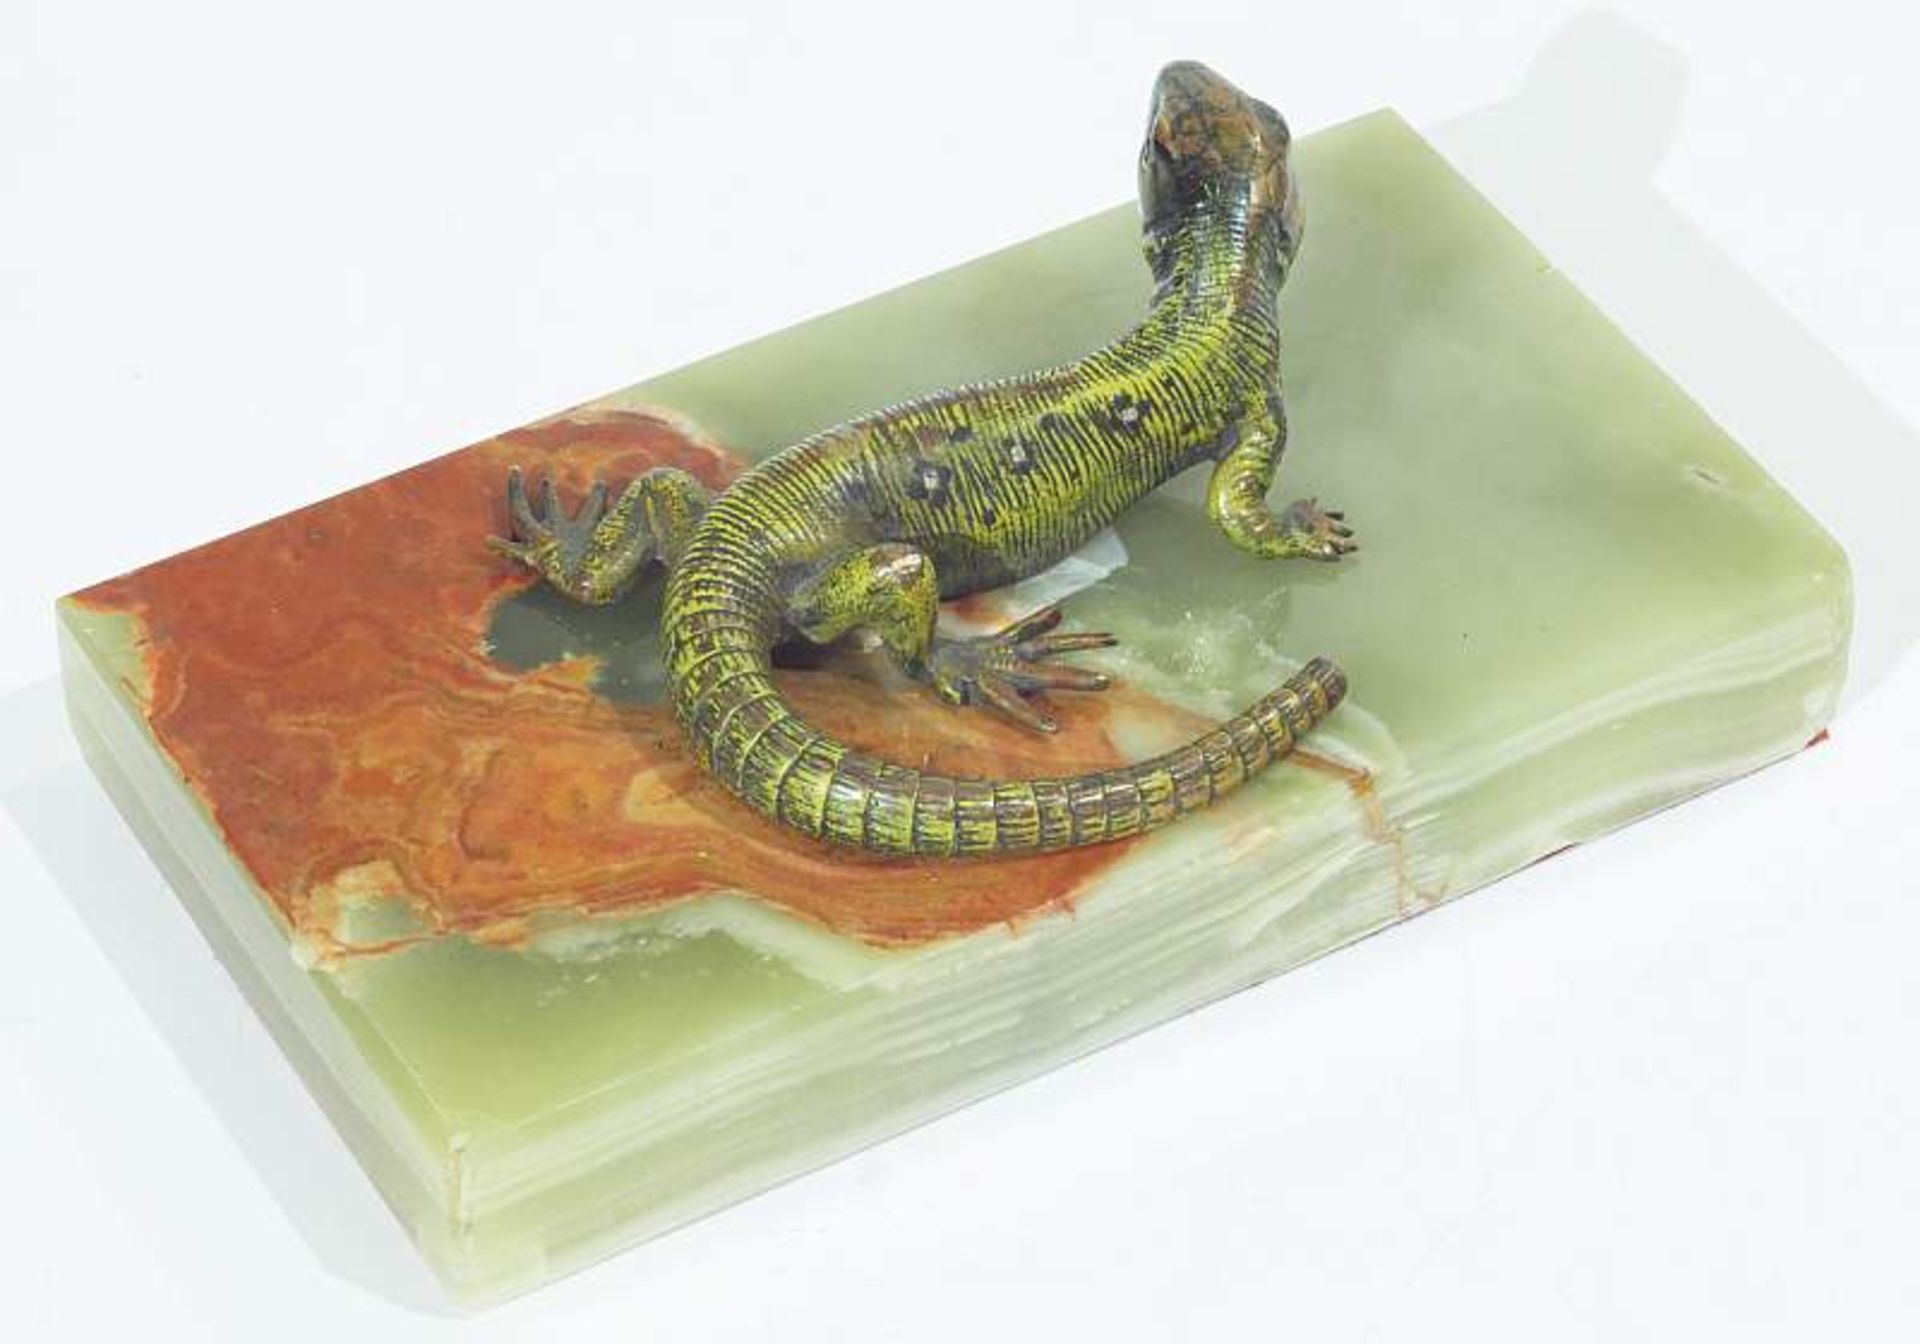 Wiener Bronze
Wiener Bronze. Smargad-Eidechse. Kleines Reptil lebensnah dargestellt. Farbig - Bild 3 aus 3